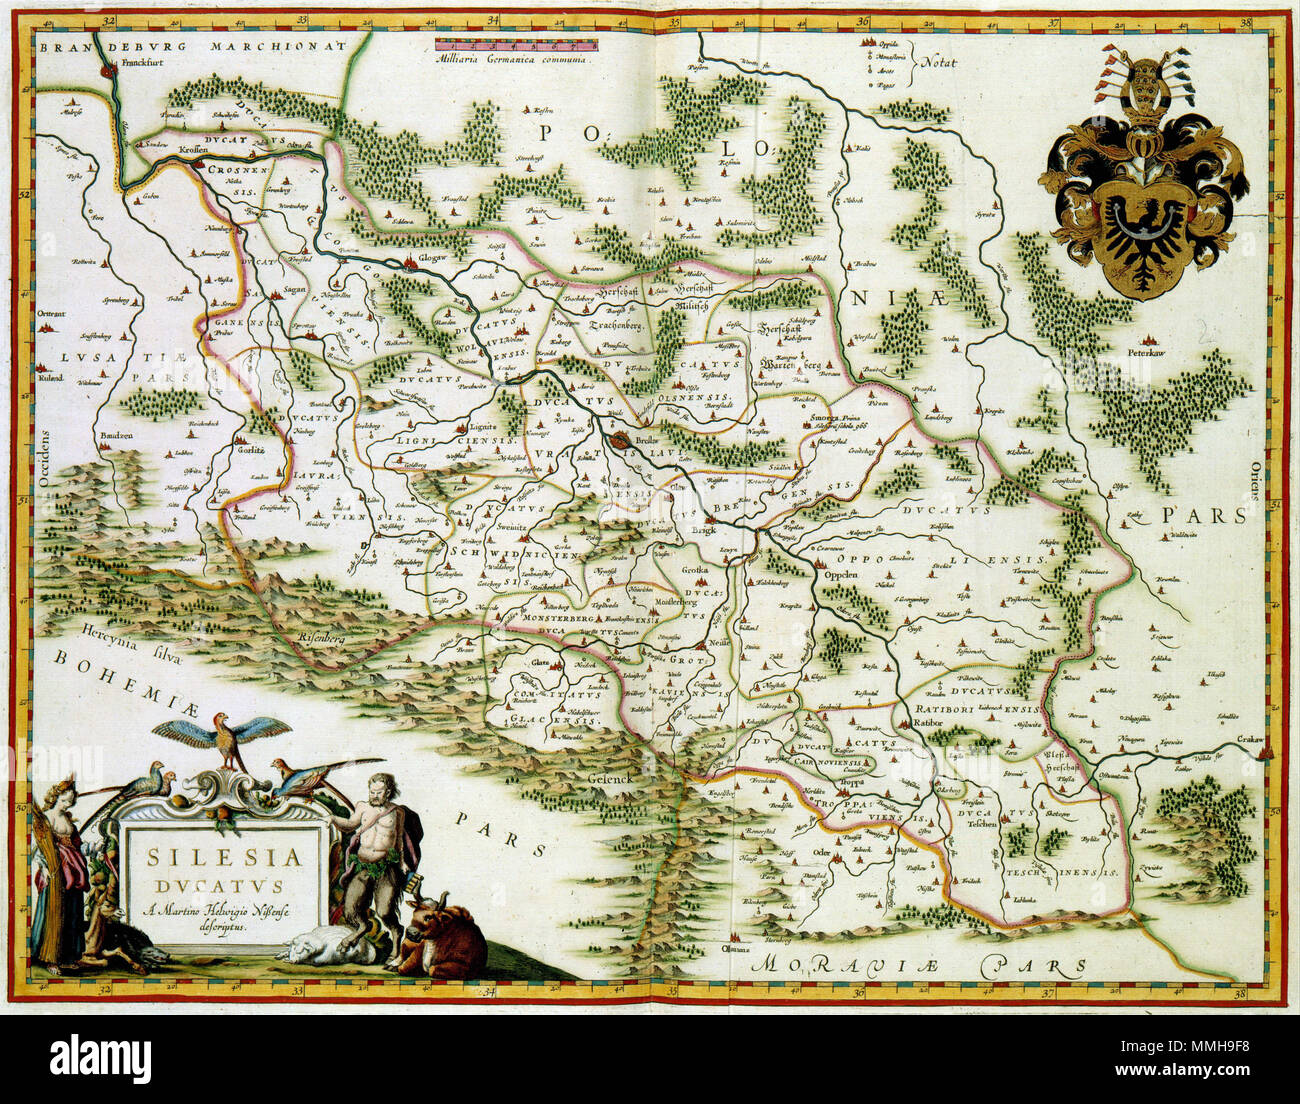 . Nederlands: Deze kaart van Silezië werd in 1635 porta Willem Jansz. Blaeu (1571-1638) gepubliceerd in zijn Atlas Novus. Als voorbeeld gebruikte Blaeu een 75-jaar oude kaart van de Duitse kartograaf Martin Helwig (1516-1574). Diens houtgravure van Silesie werd al in 1561 uitgegeven. Deze kaart werd ook porta andere Nederlandse kartografen als Abraham Ortelius (1527-1598), Gerard de Jode (1509-1591) en Jan Janssonius (1588-1664) als bron voor hun kaarten gebruikt. Inglese: Questa mappa di Silezia è stata pubblicata nel 1635 da Willem Jansz. Blaeu (1571-1638) nel suo Atlas Novus. Blaeu basato la mappa sul Foto Stock